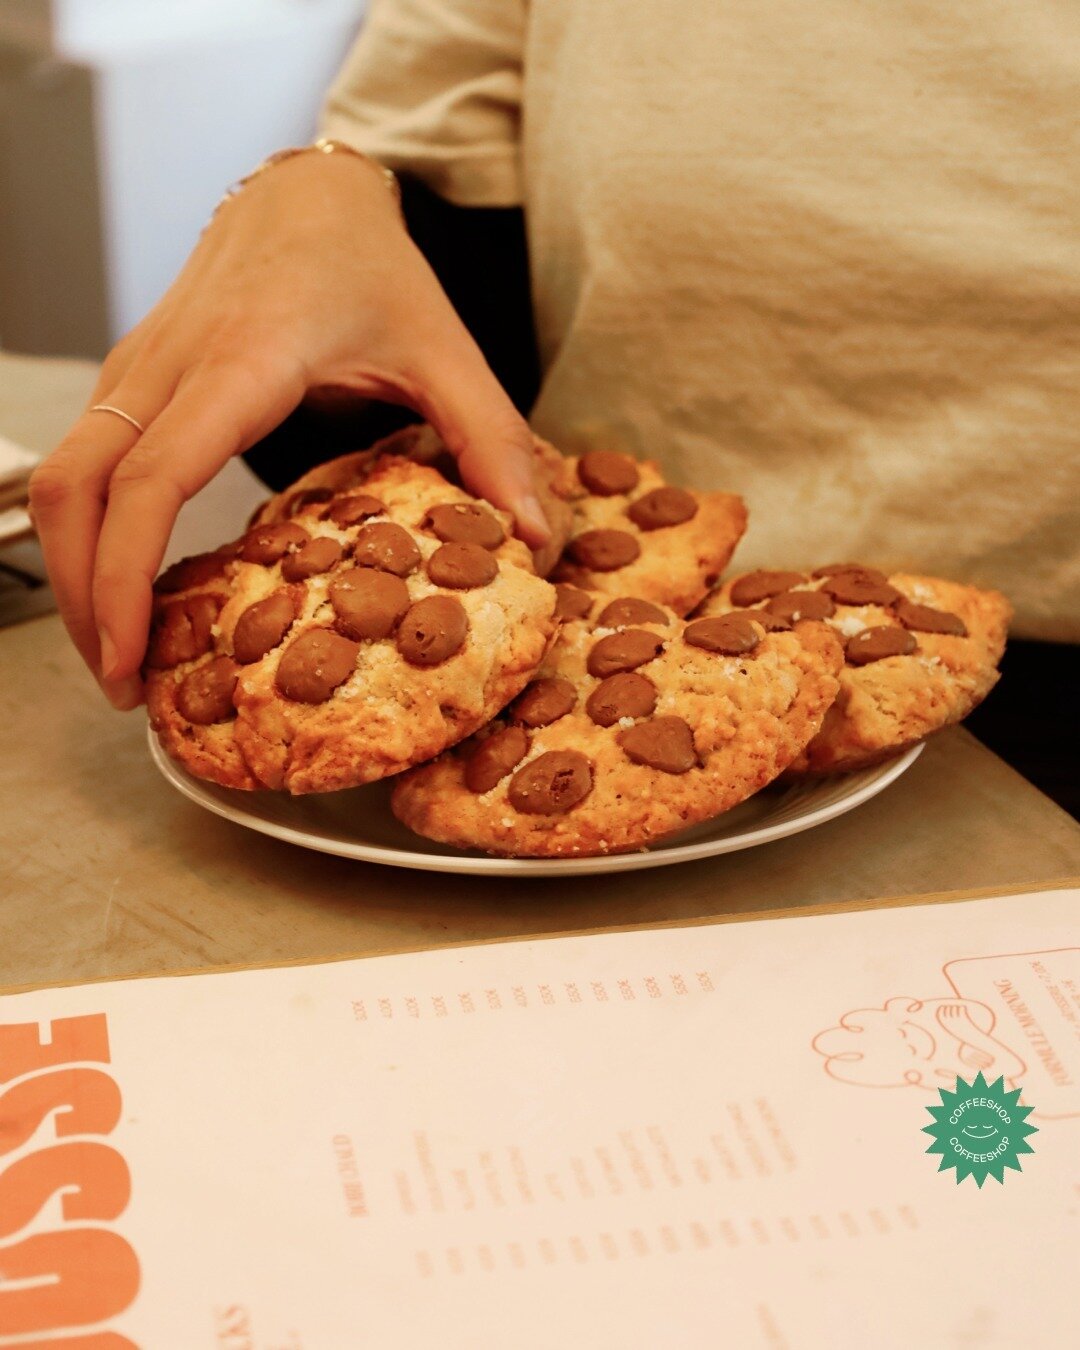 🍪 MAXI CRUNCHY ! 
Notre cookie au chocolat au lait et &agrave; la fleur de sel va te faire craquer.

#cookie #food #coffeeshop